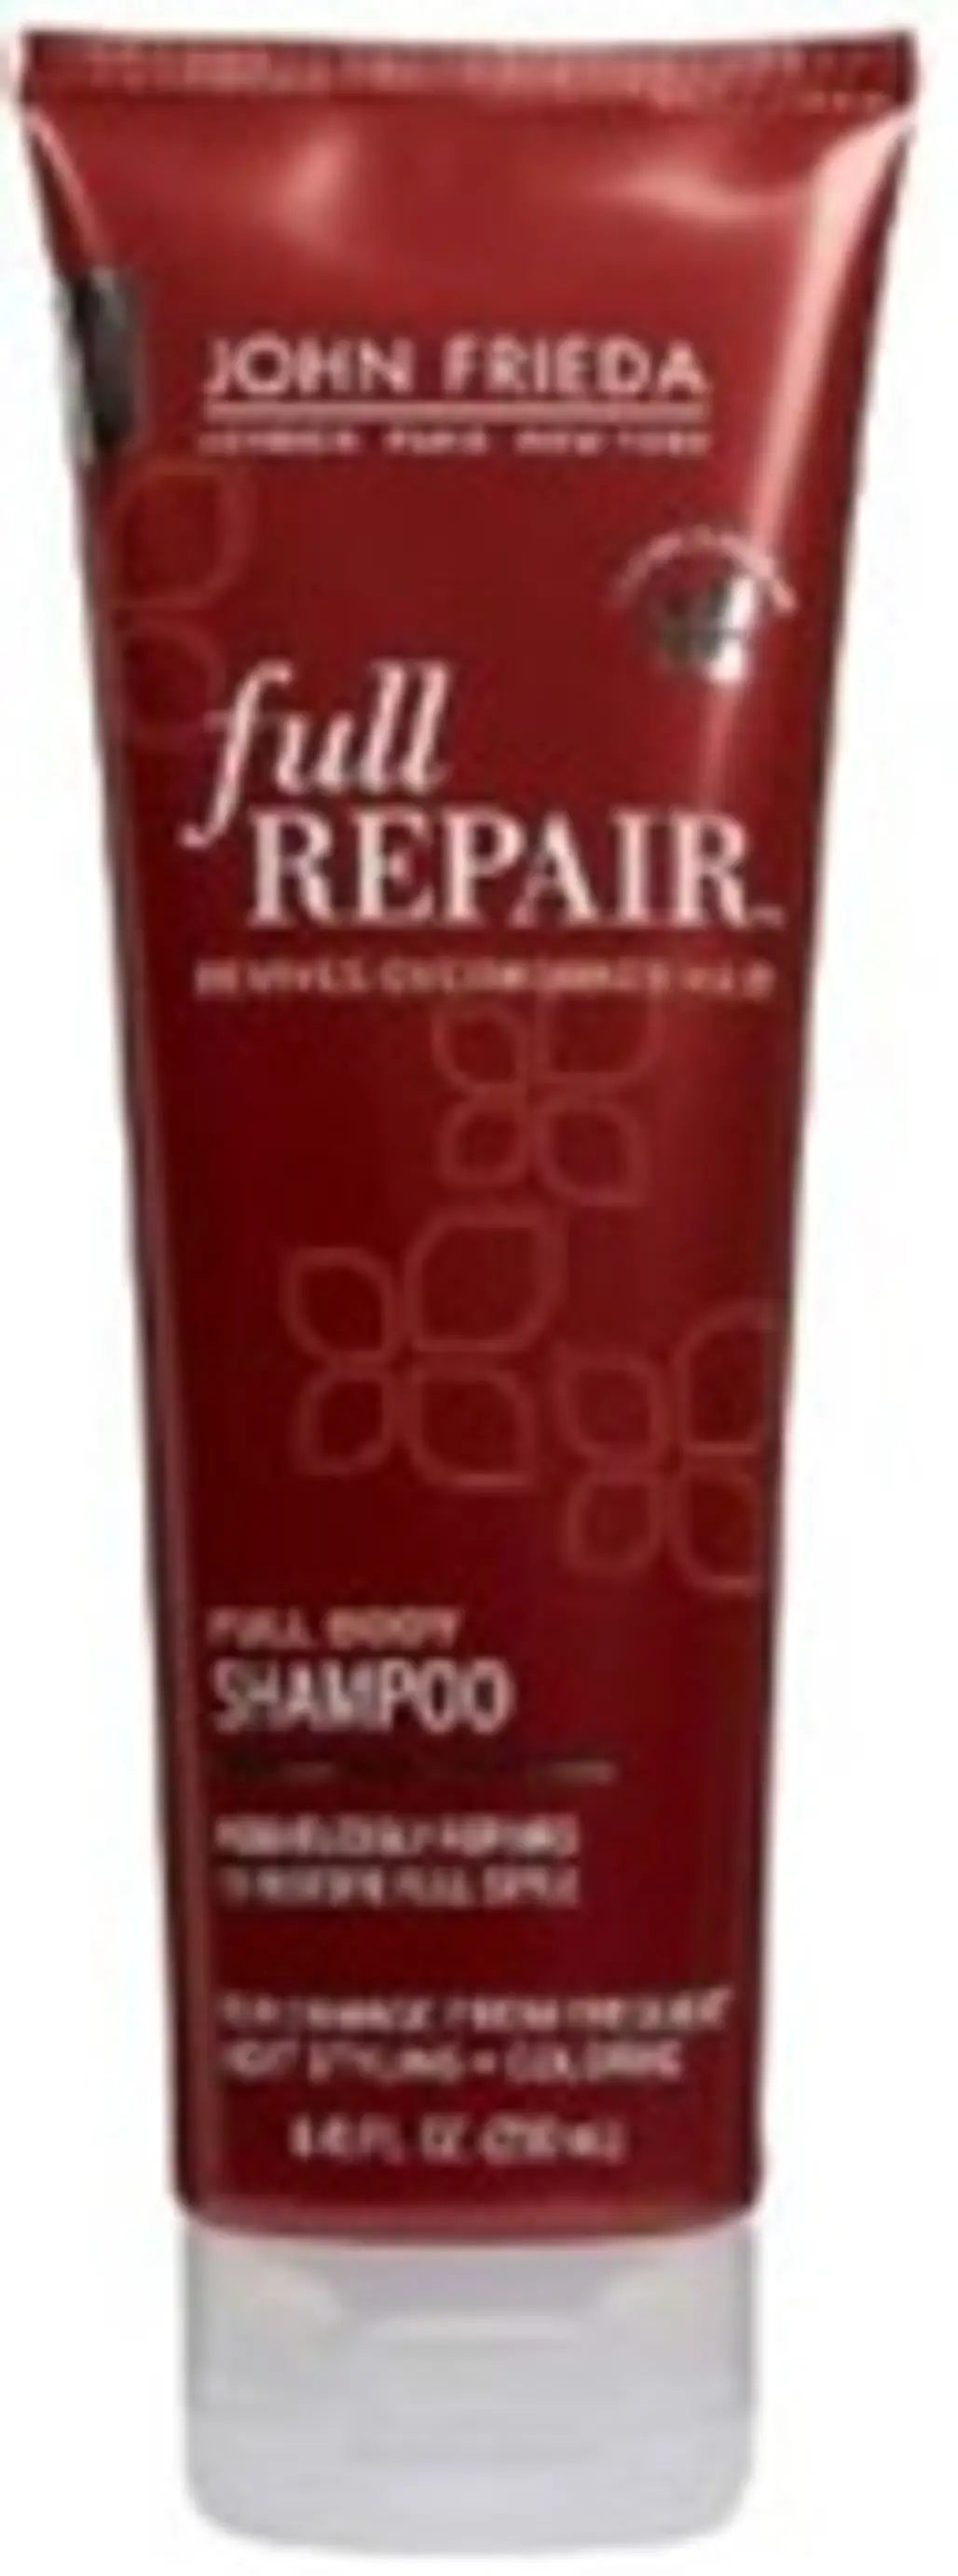 John Frieda Full Repair Shampoo